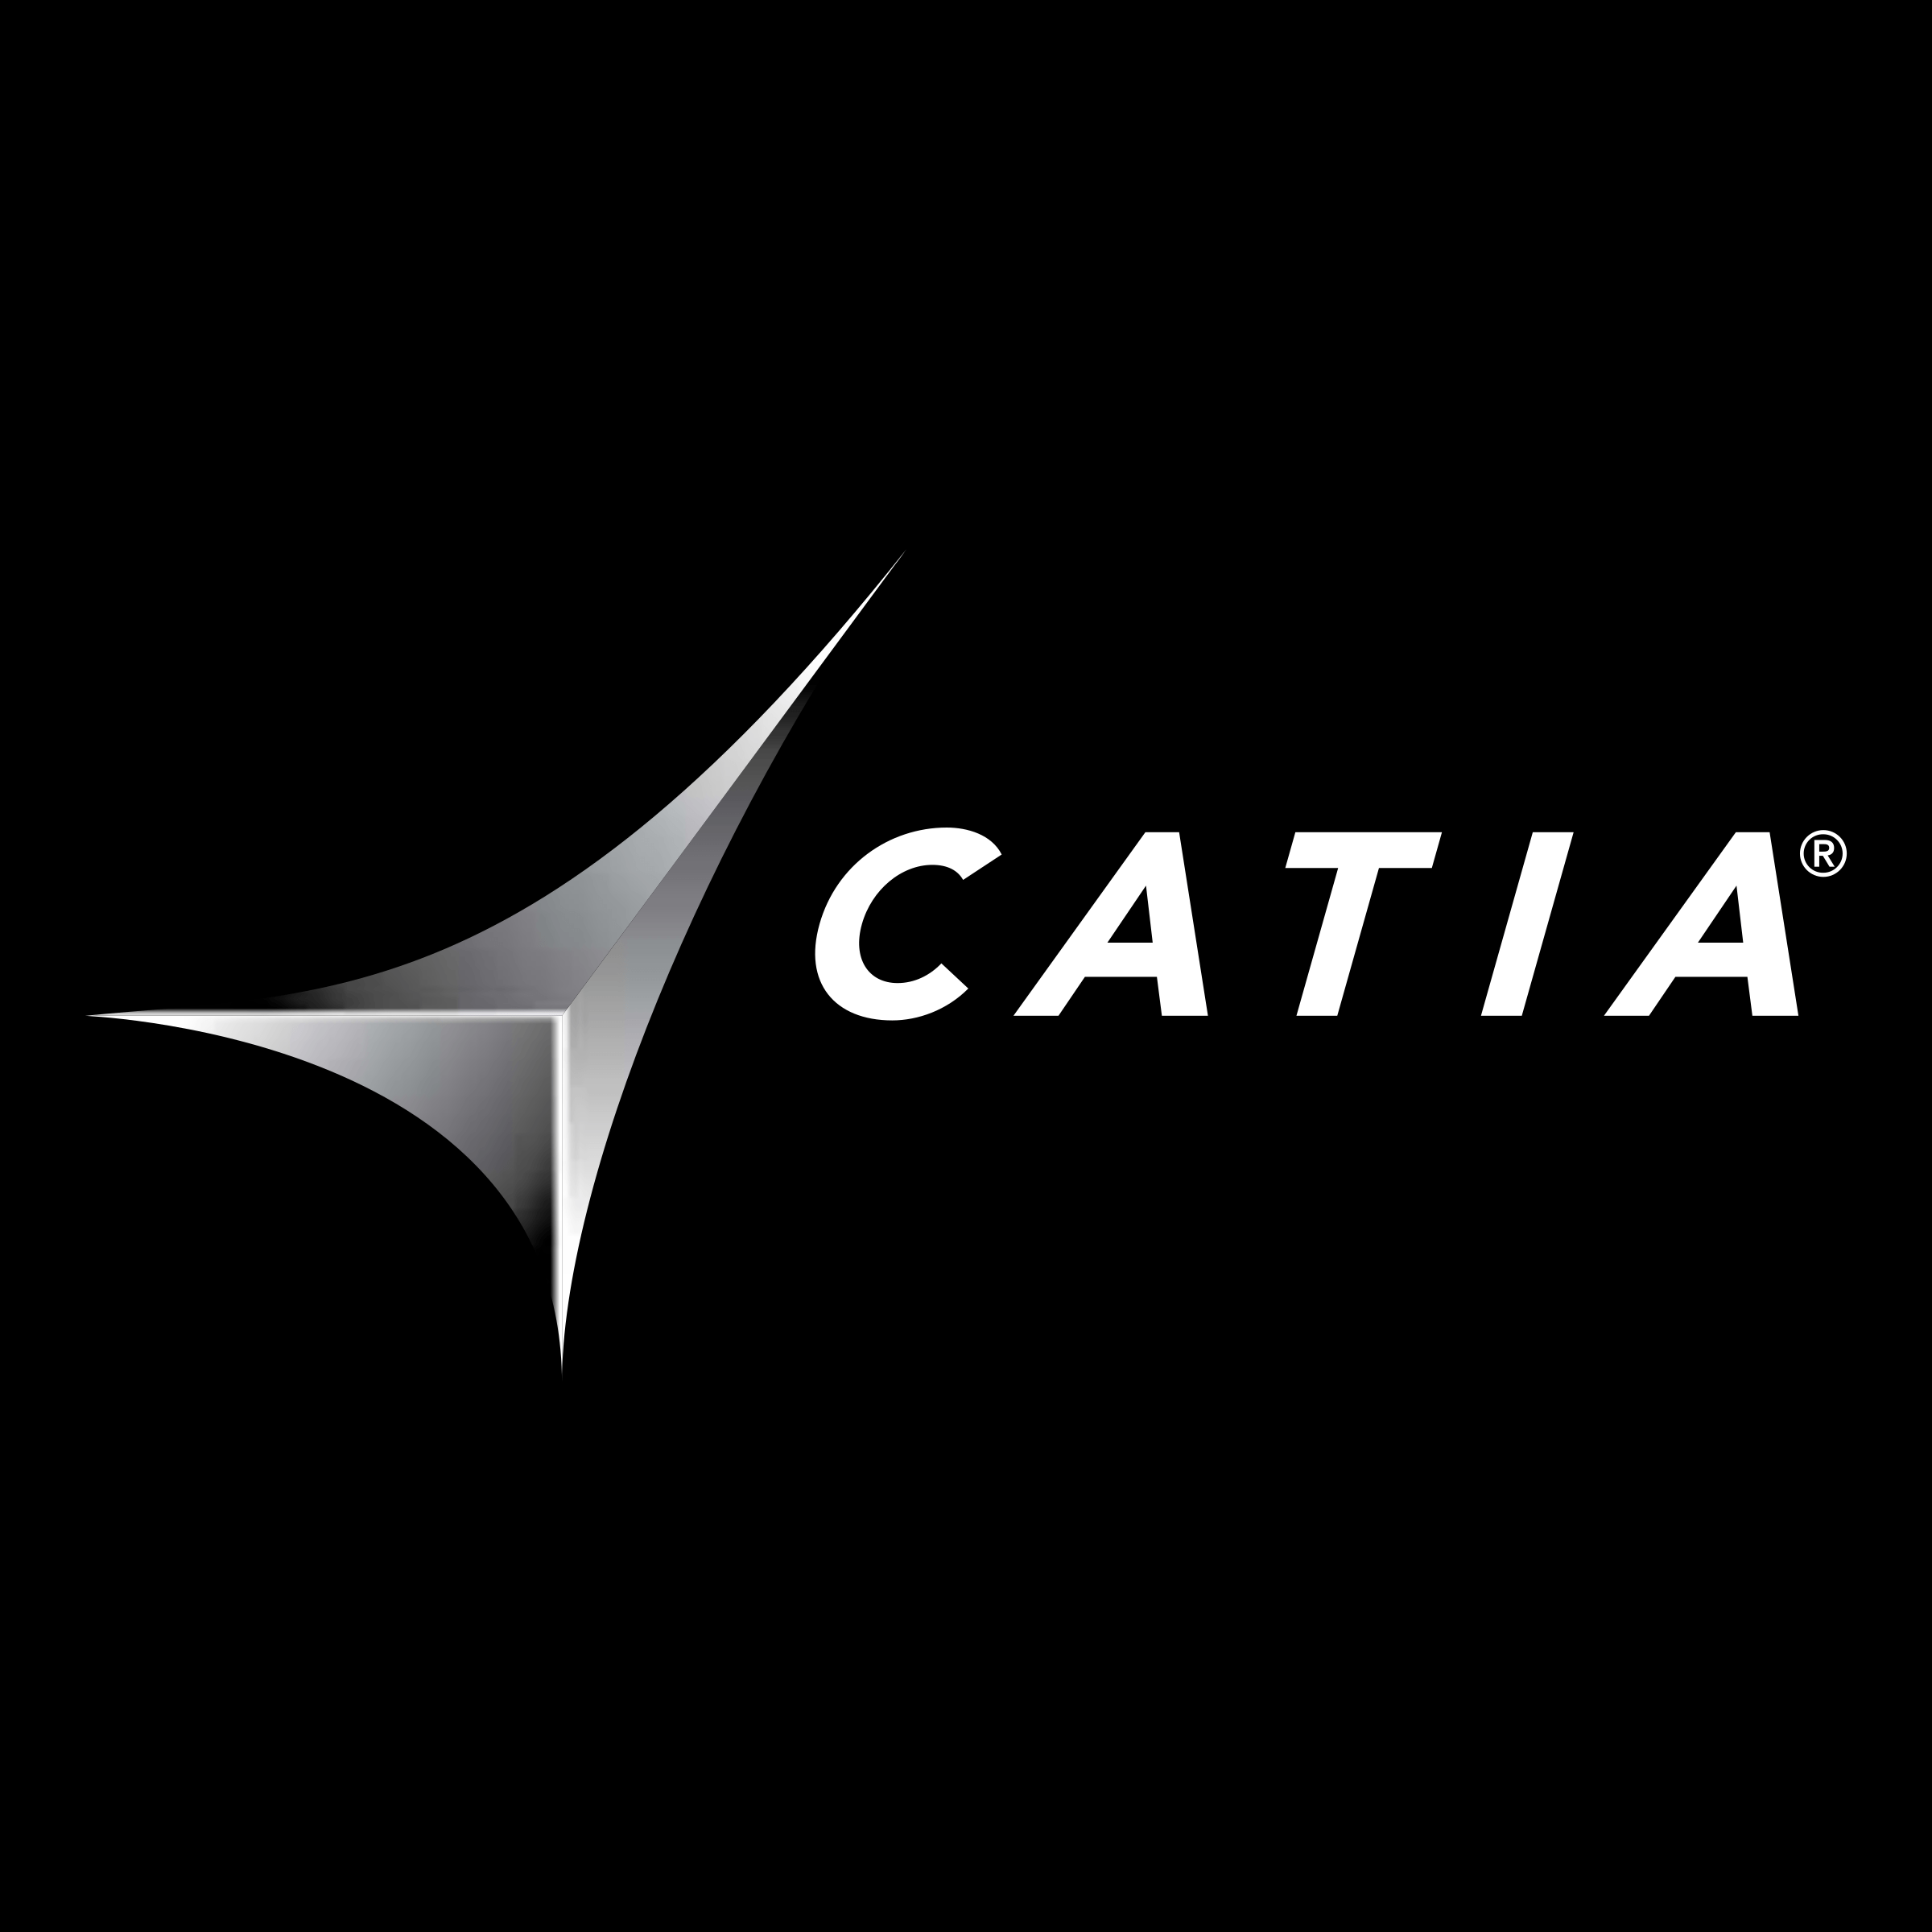 Catia Logo - Catia Solutions Logo PNG Transparent & SVG Vector